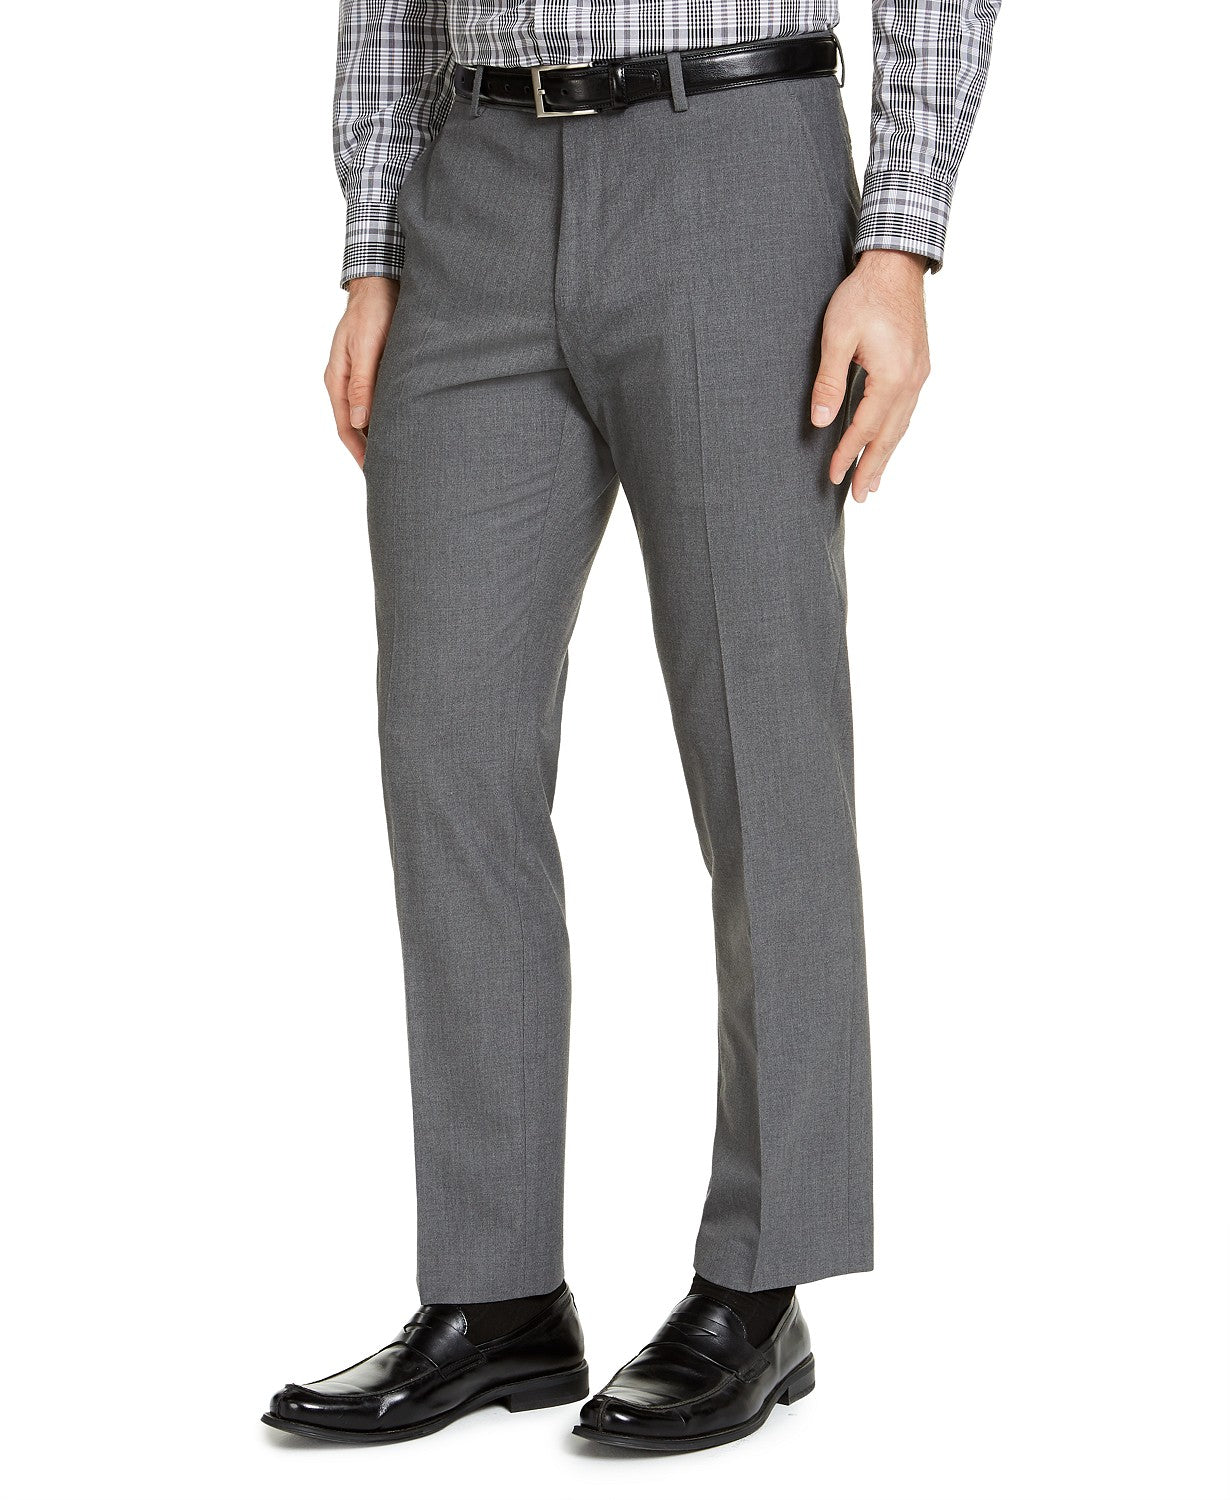 IZOD Men's Classic-Fit Suit Pants Grey Solid 32 x 30 Flat Front Pant